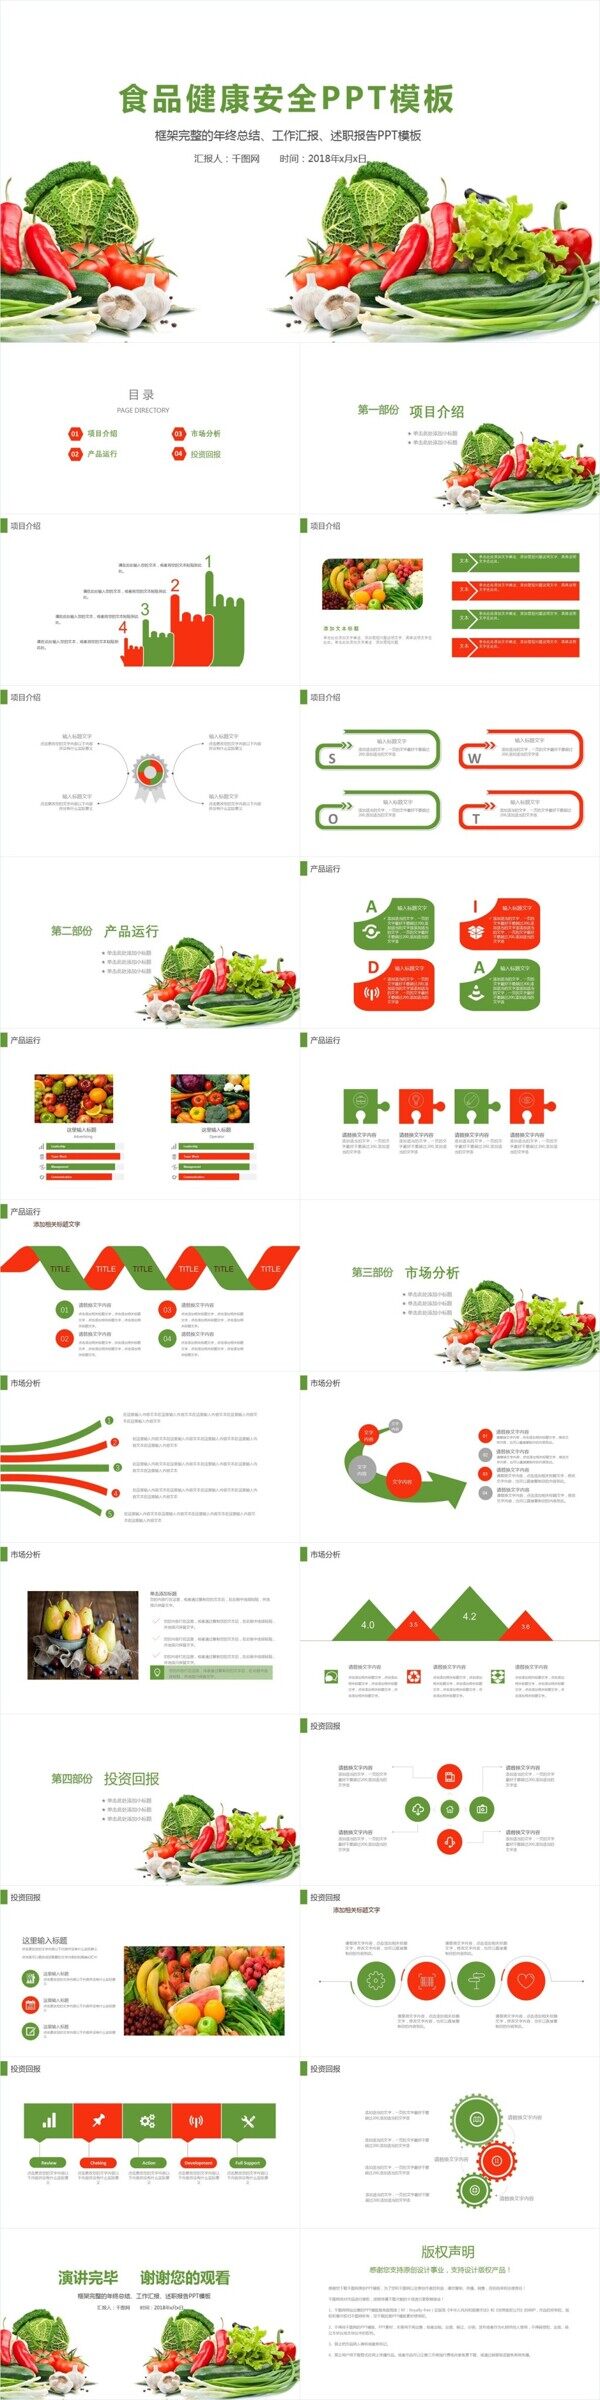 绿色蔬菜果蔬农副产品推广宣传PPT模板